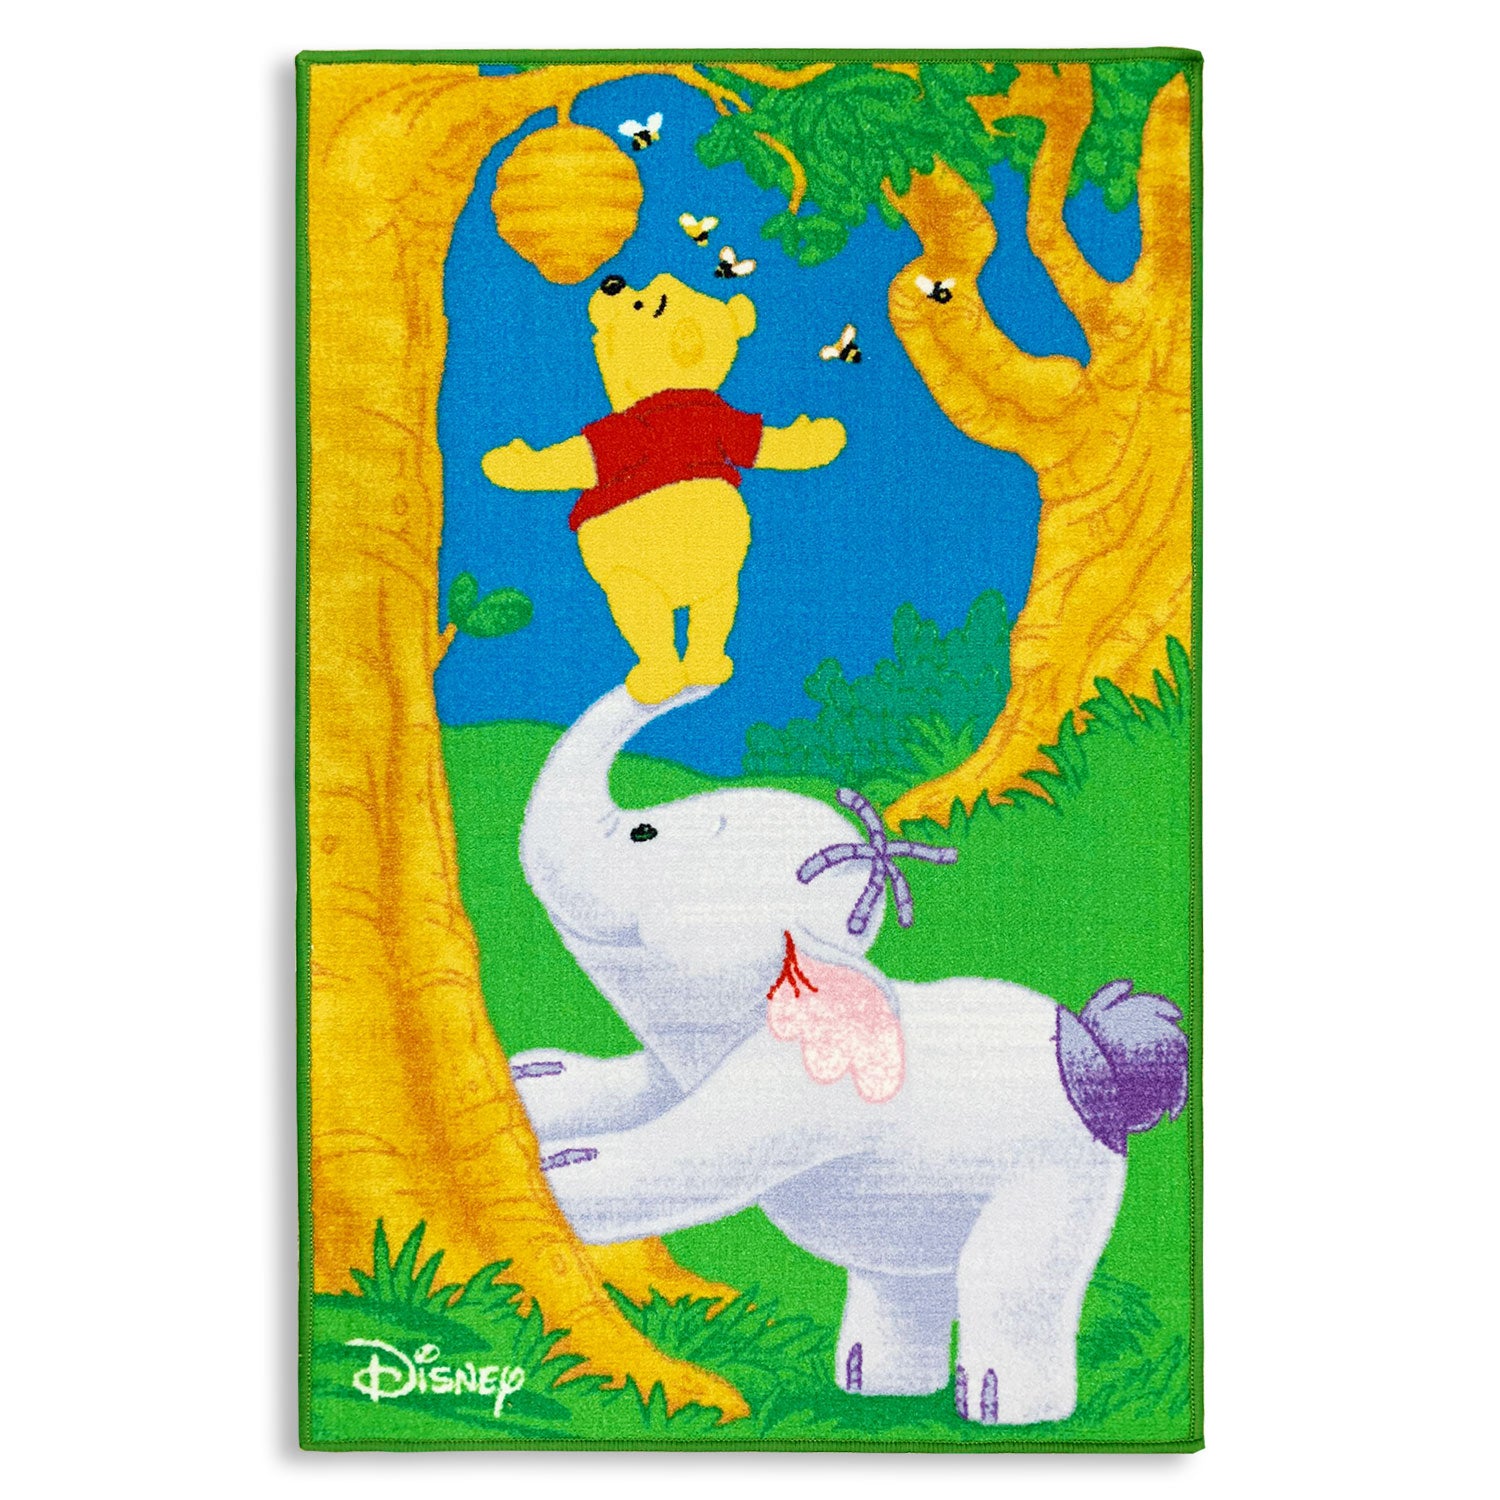 Tappeto antiscivolo cameretta bambini Disney Winnie the Pooh 80x120 cm 4851